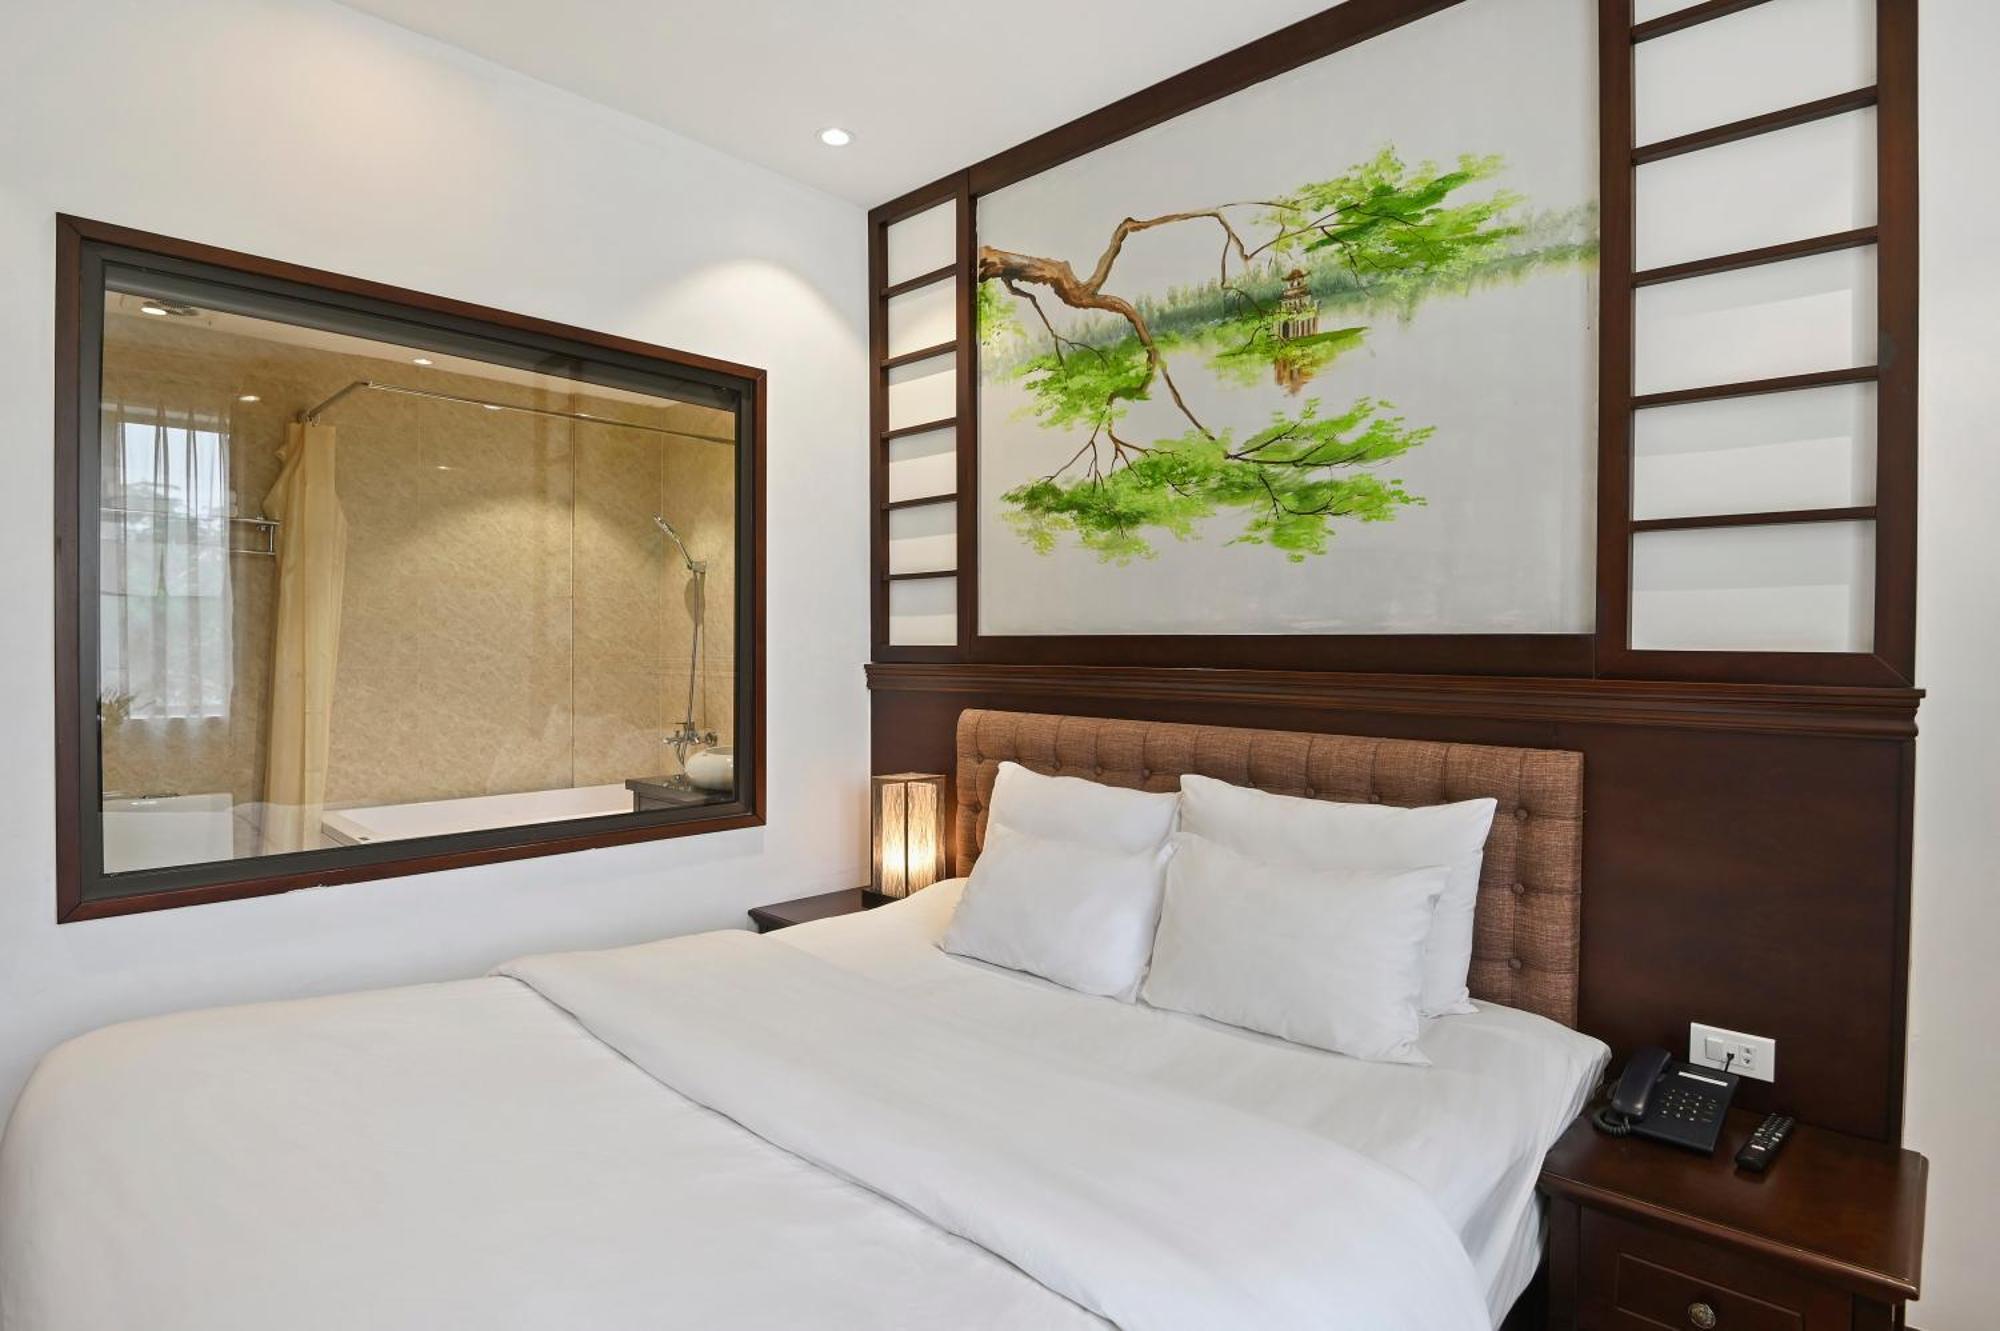 22Land Residence Hotel&Spa Hanói Habitación foto